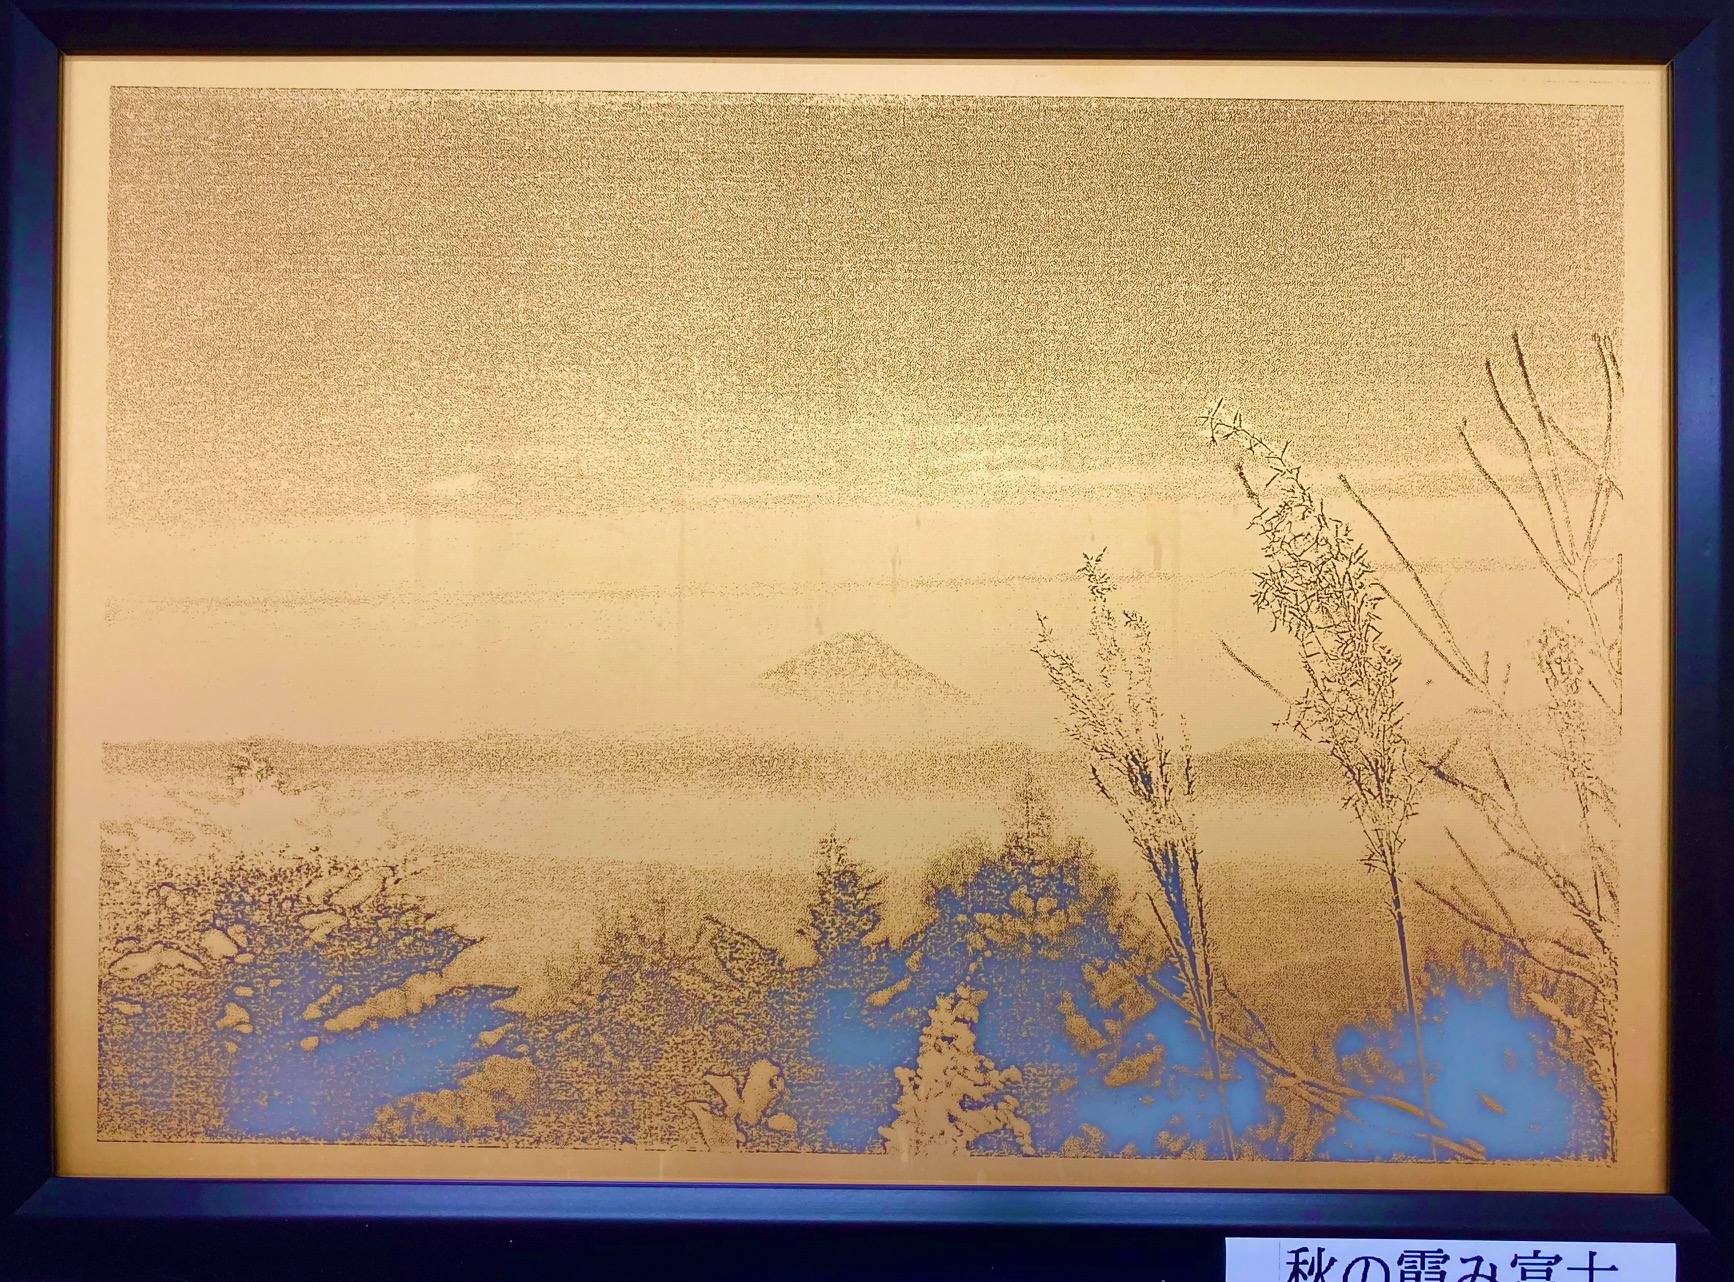 エッチングアートパネル-秋の霞み富士